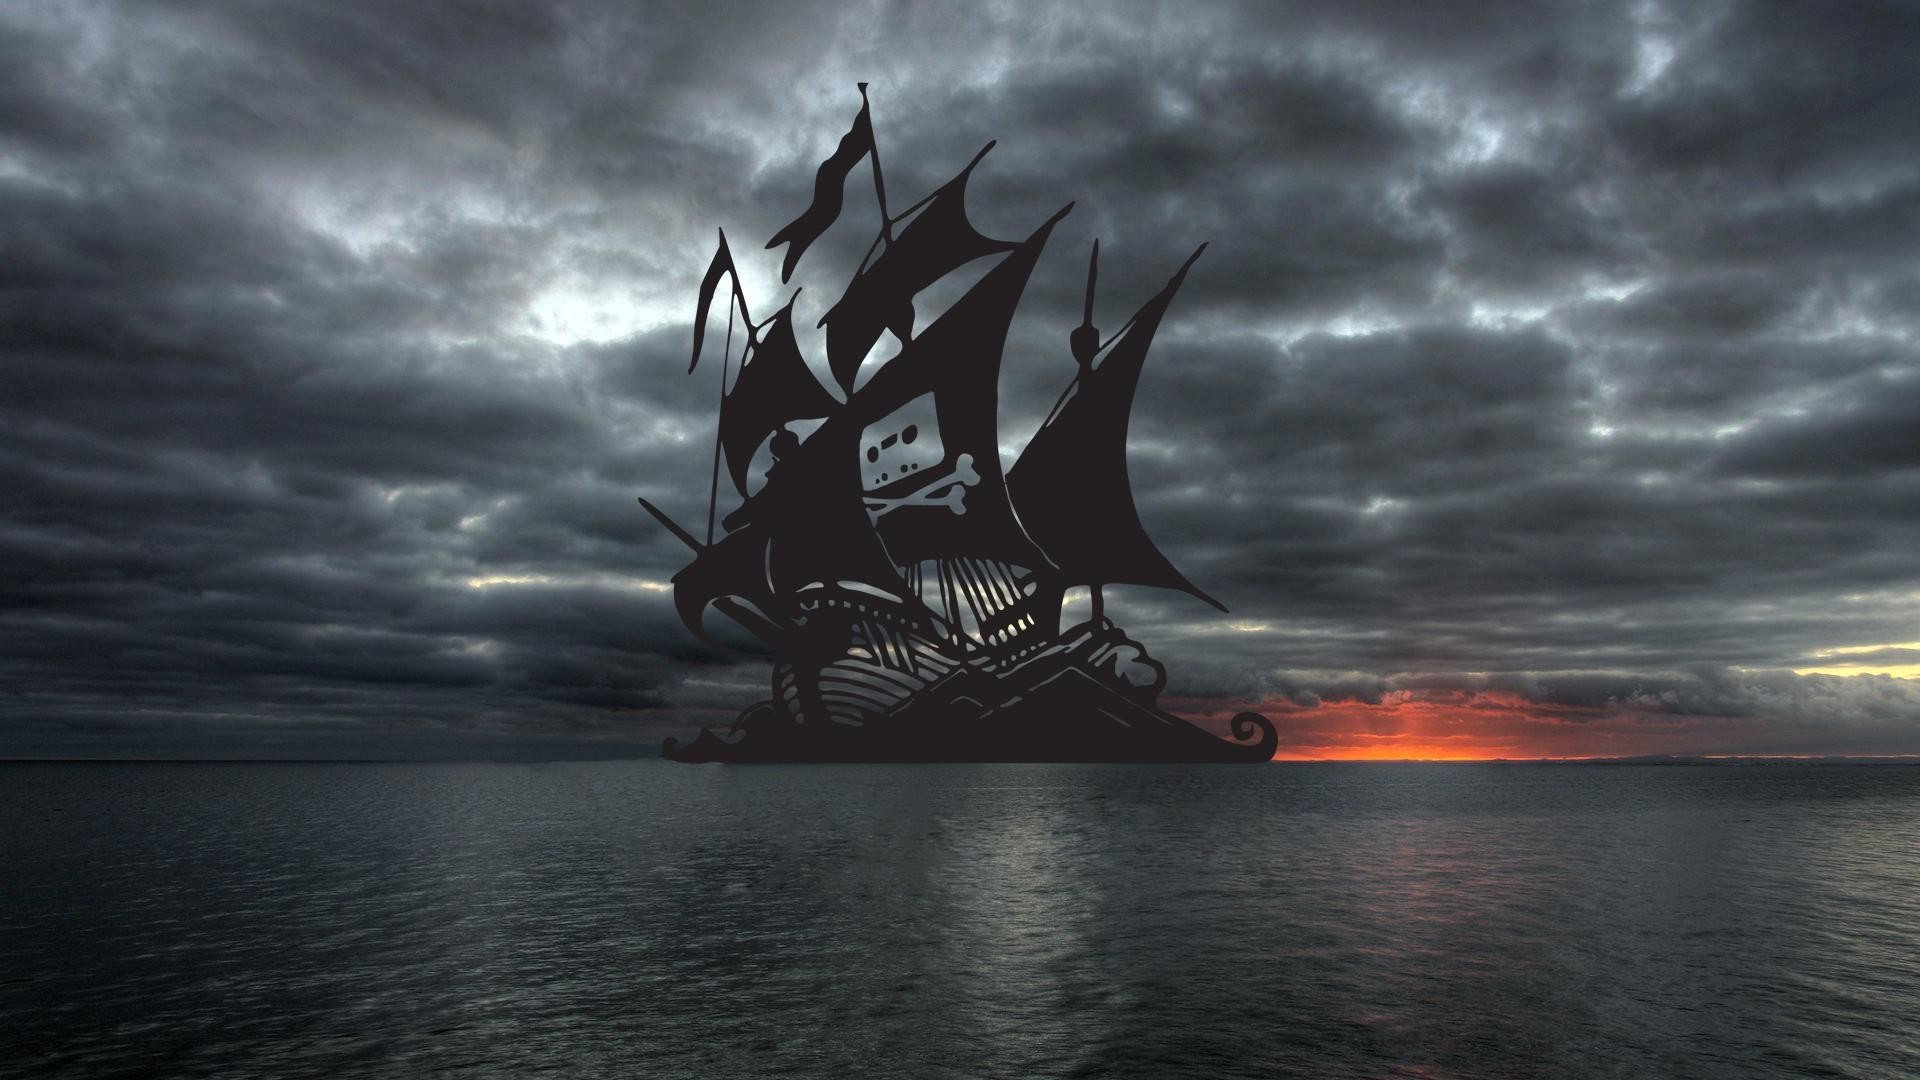 hercules 2014 torrent pirate bay